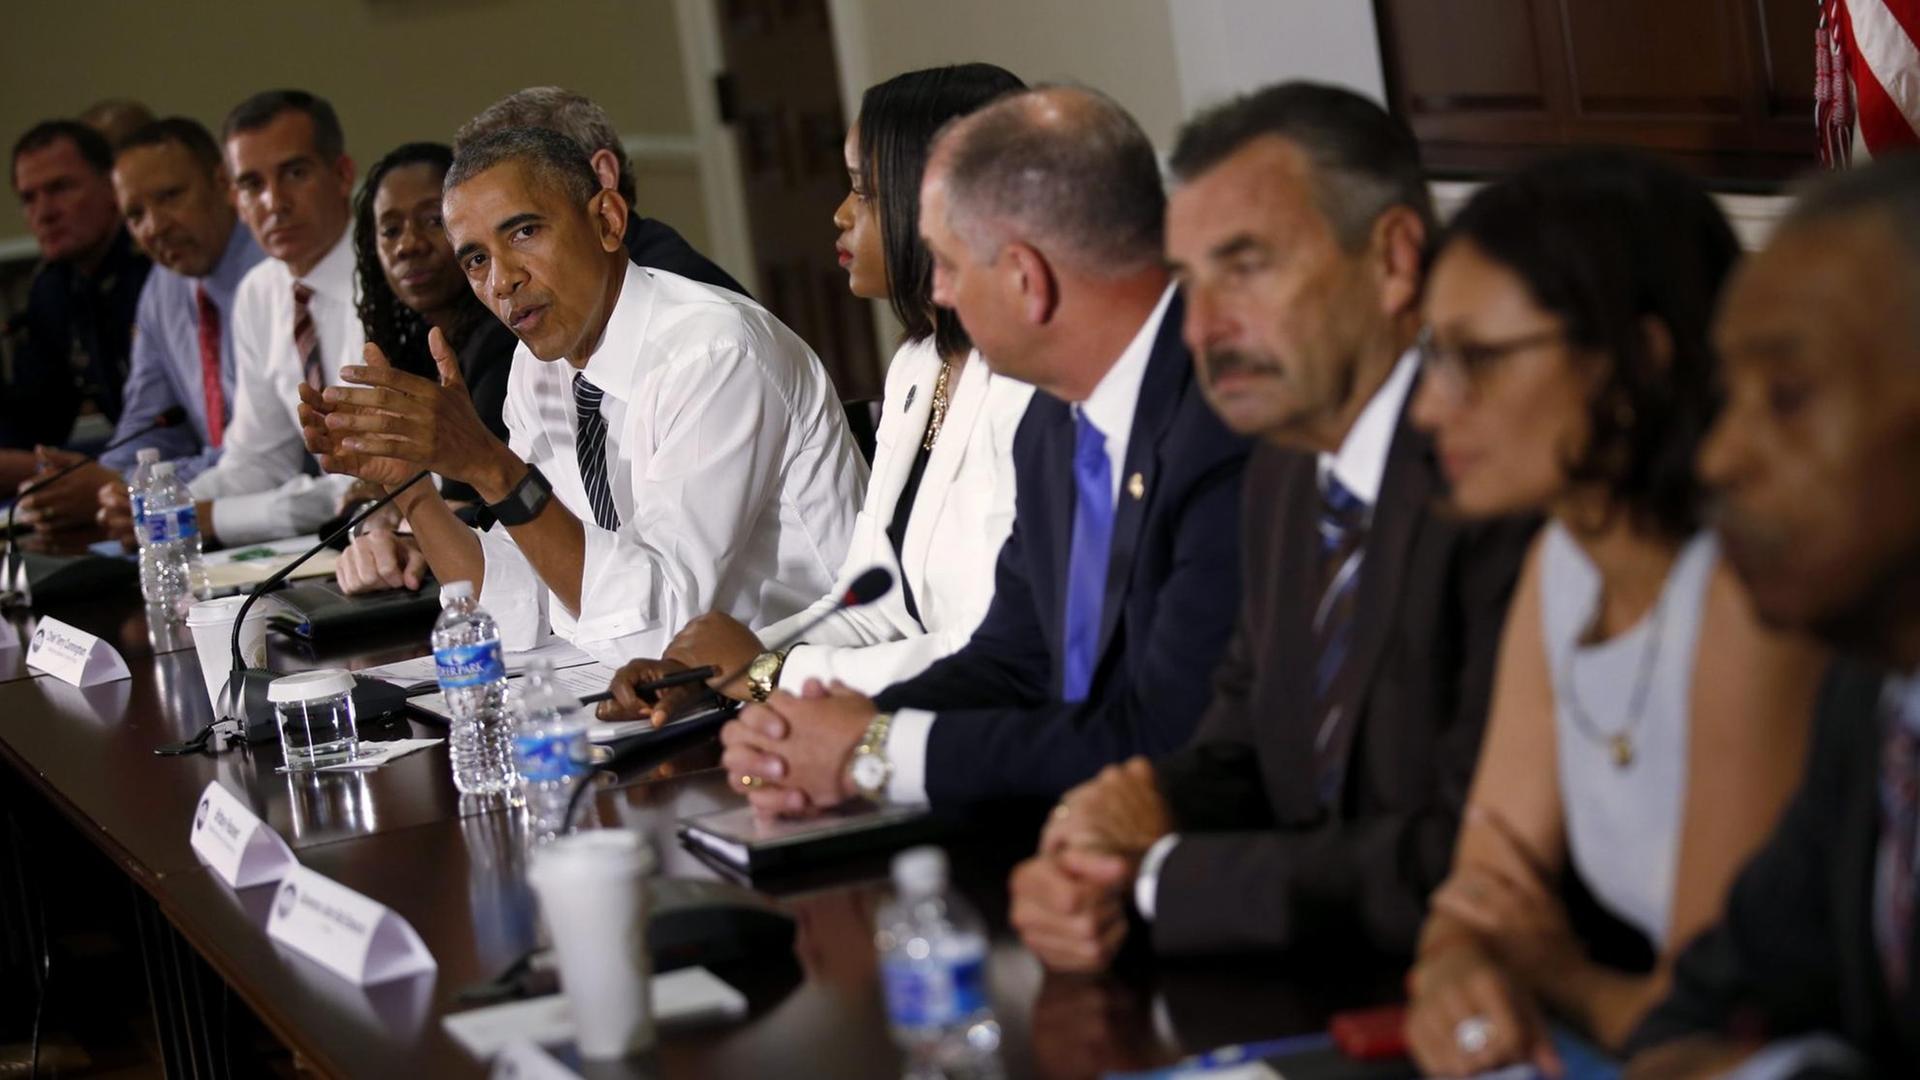 Der Präsident von dem Land USA, Barack Obama, spricht mit Bürger-Rechtlern und Polizisten